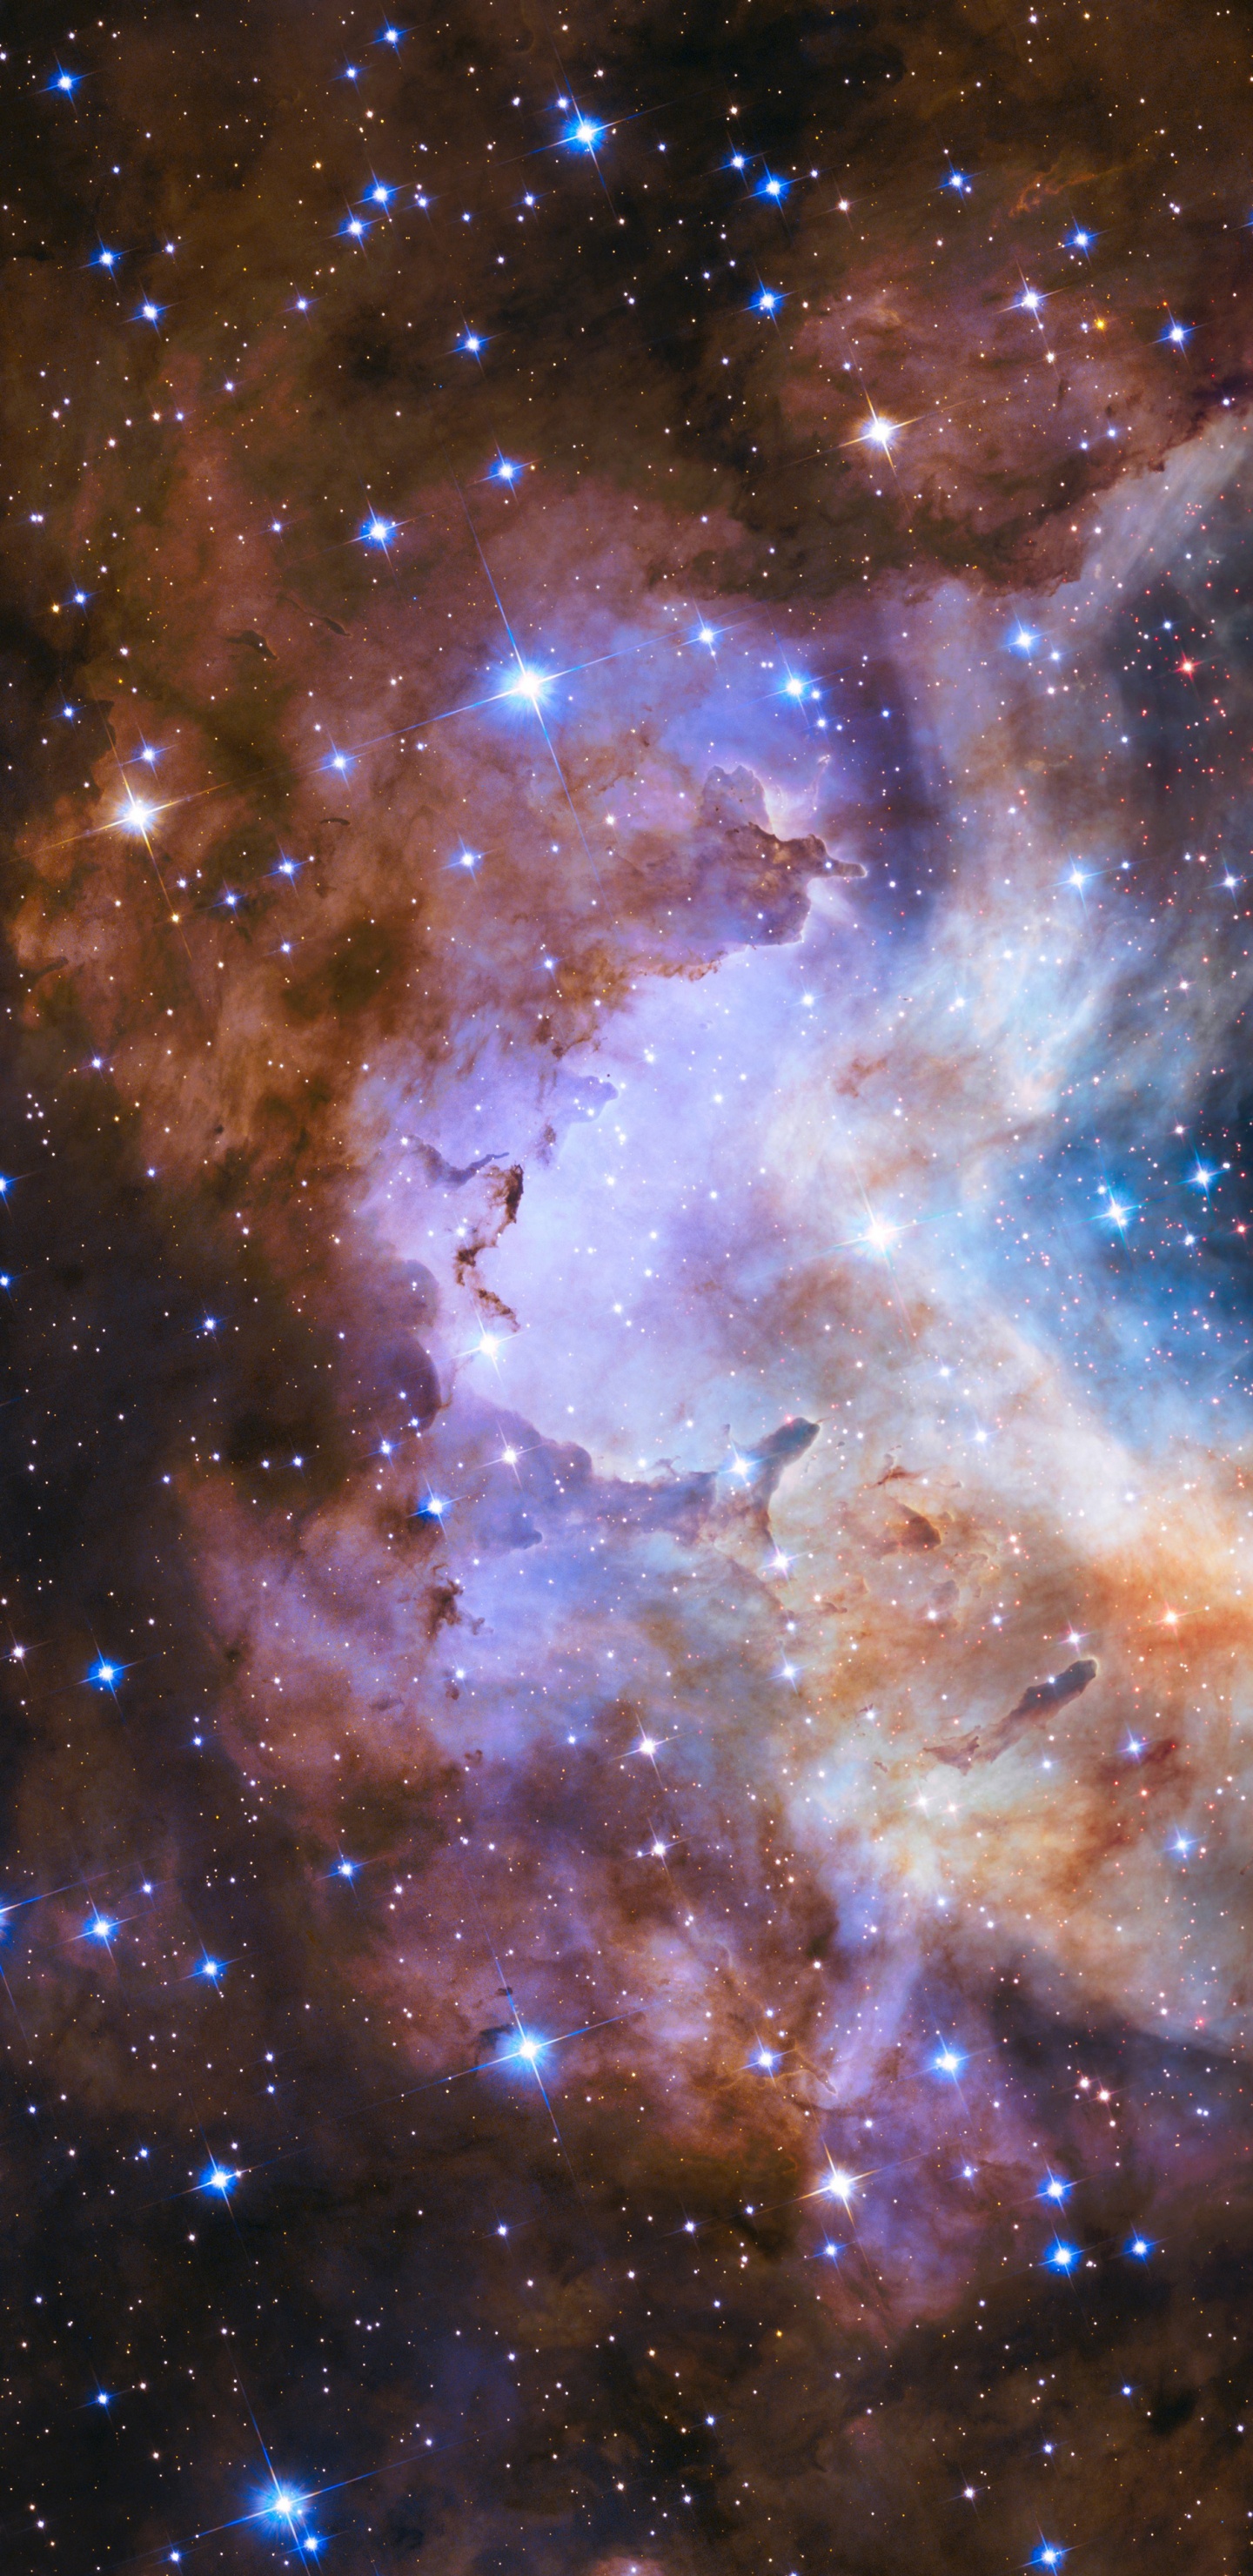 明星, 哈勃太空望远镜, 星团, 宇宙, 天文学 壁纸 1440x2960 允许